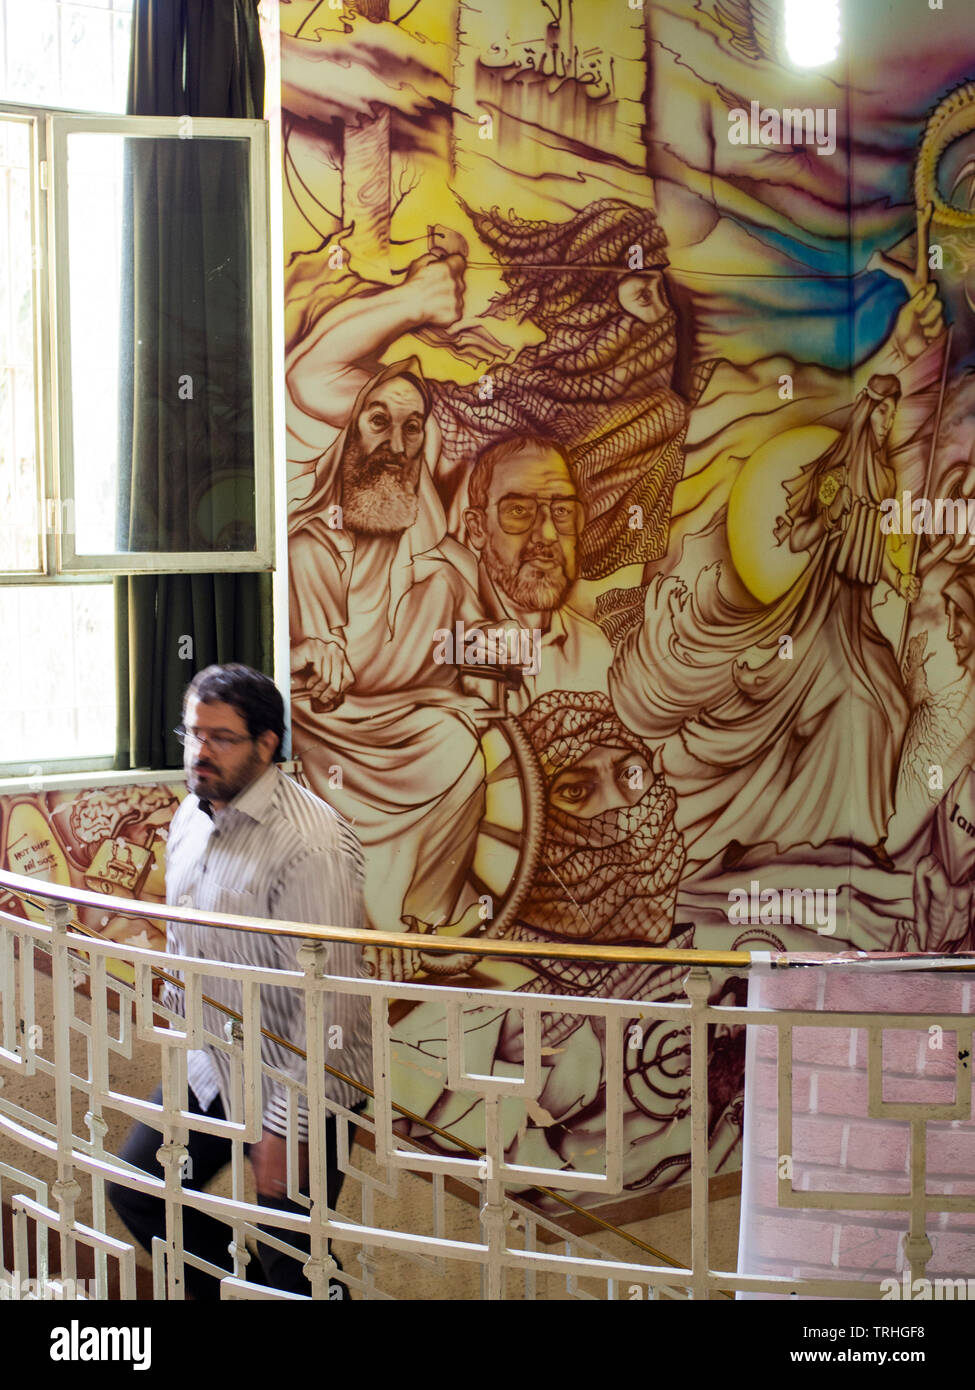 Murales all'interno del Museum of Anti-arrogance, che si trova nell'ex ambasciata americana a Teheran, Iran. Foto Stock